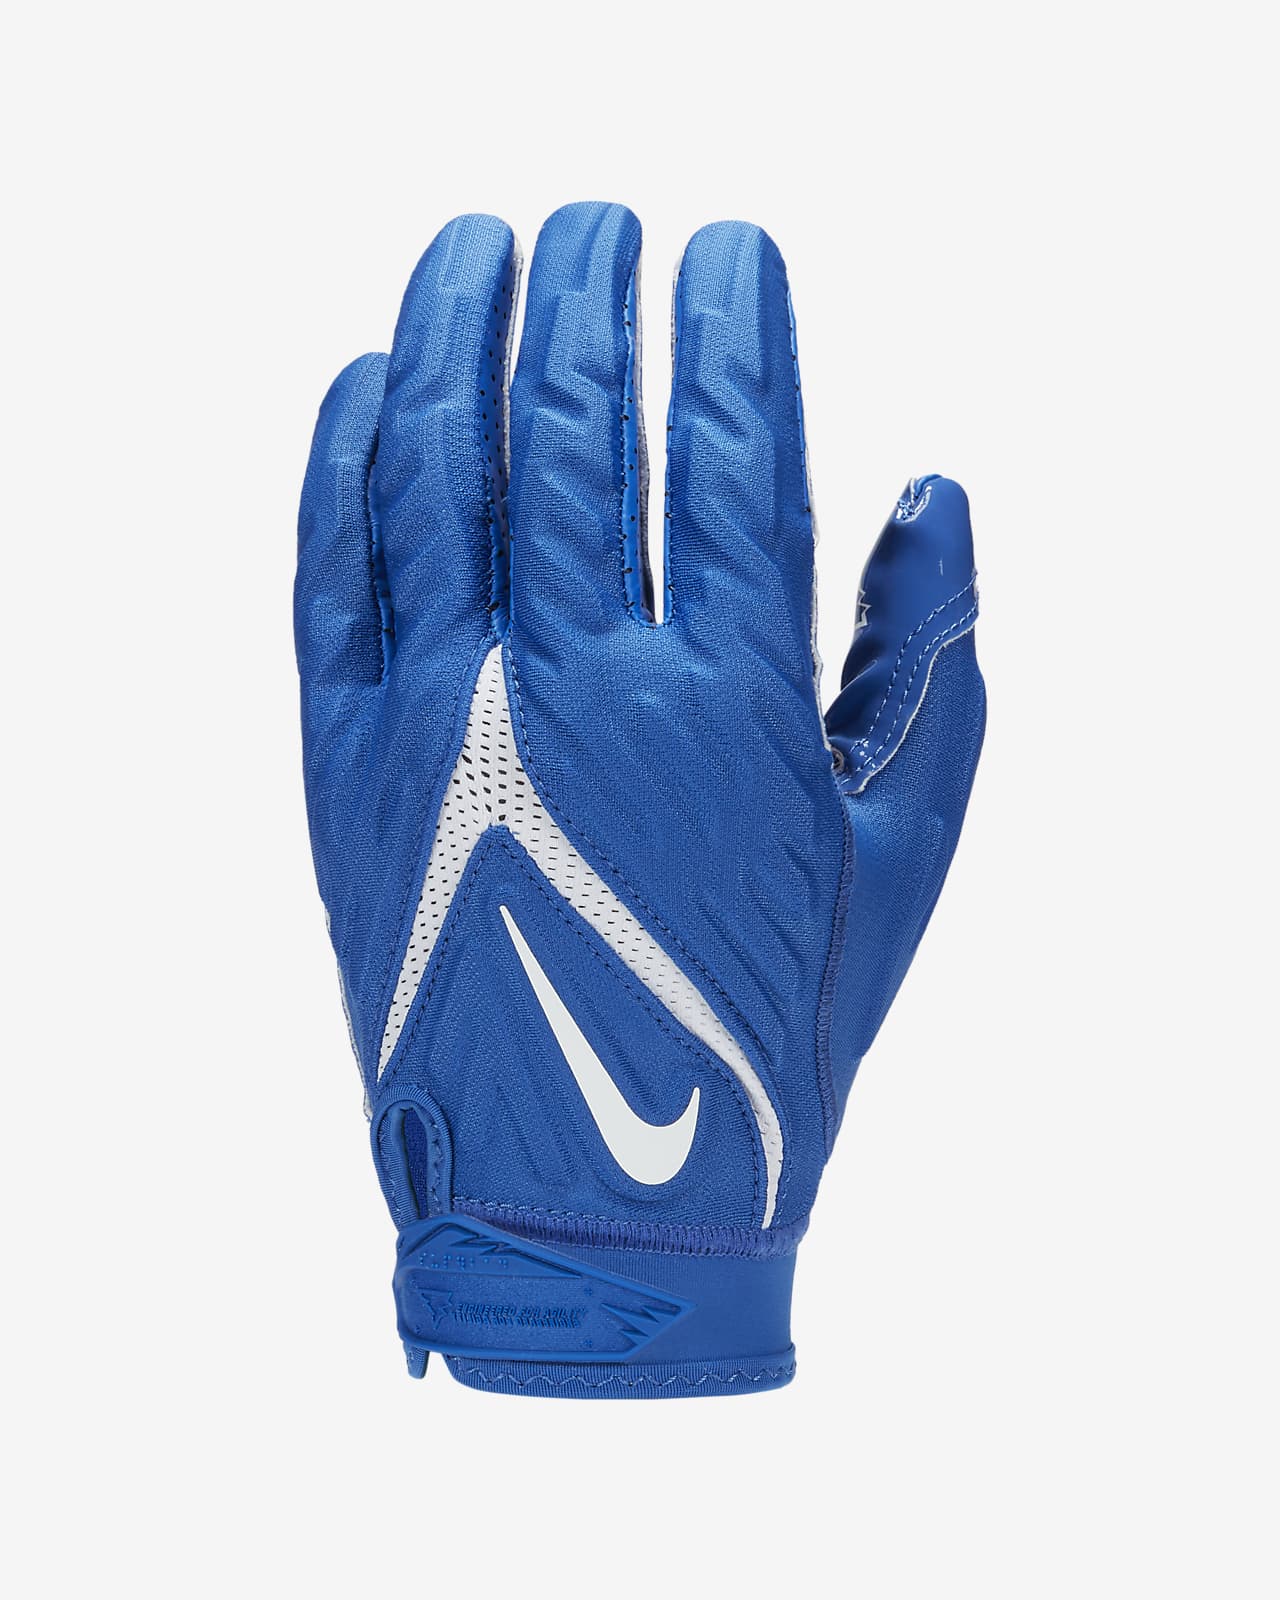 nike superbad gloves 5.0